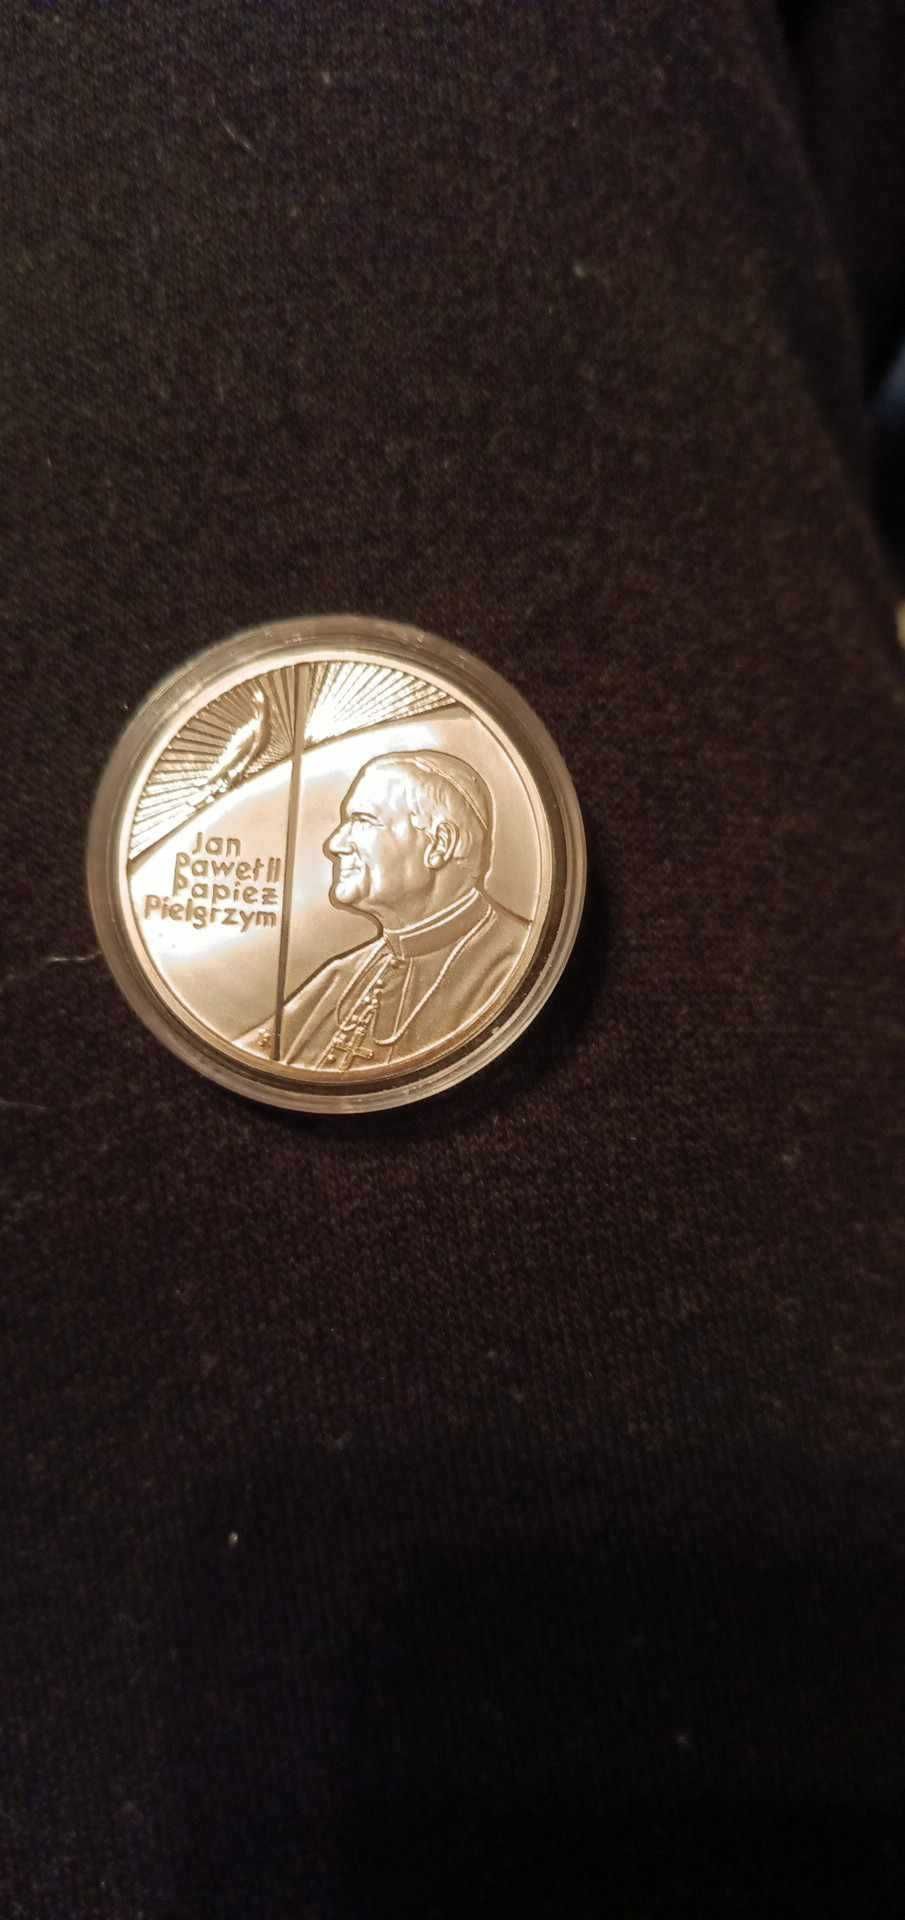 Moneta srebro Jan Paweł Pielgrzym 10zł